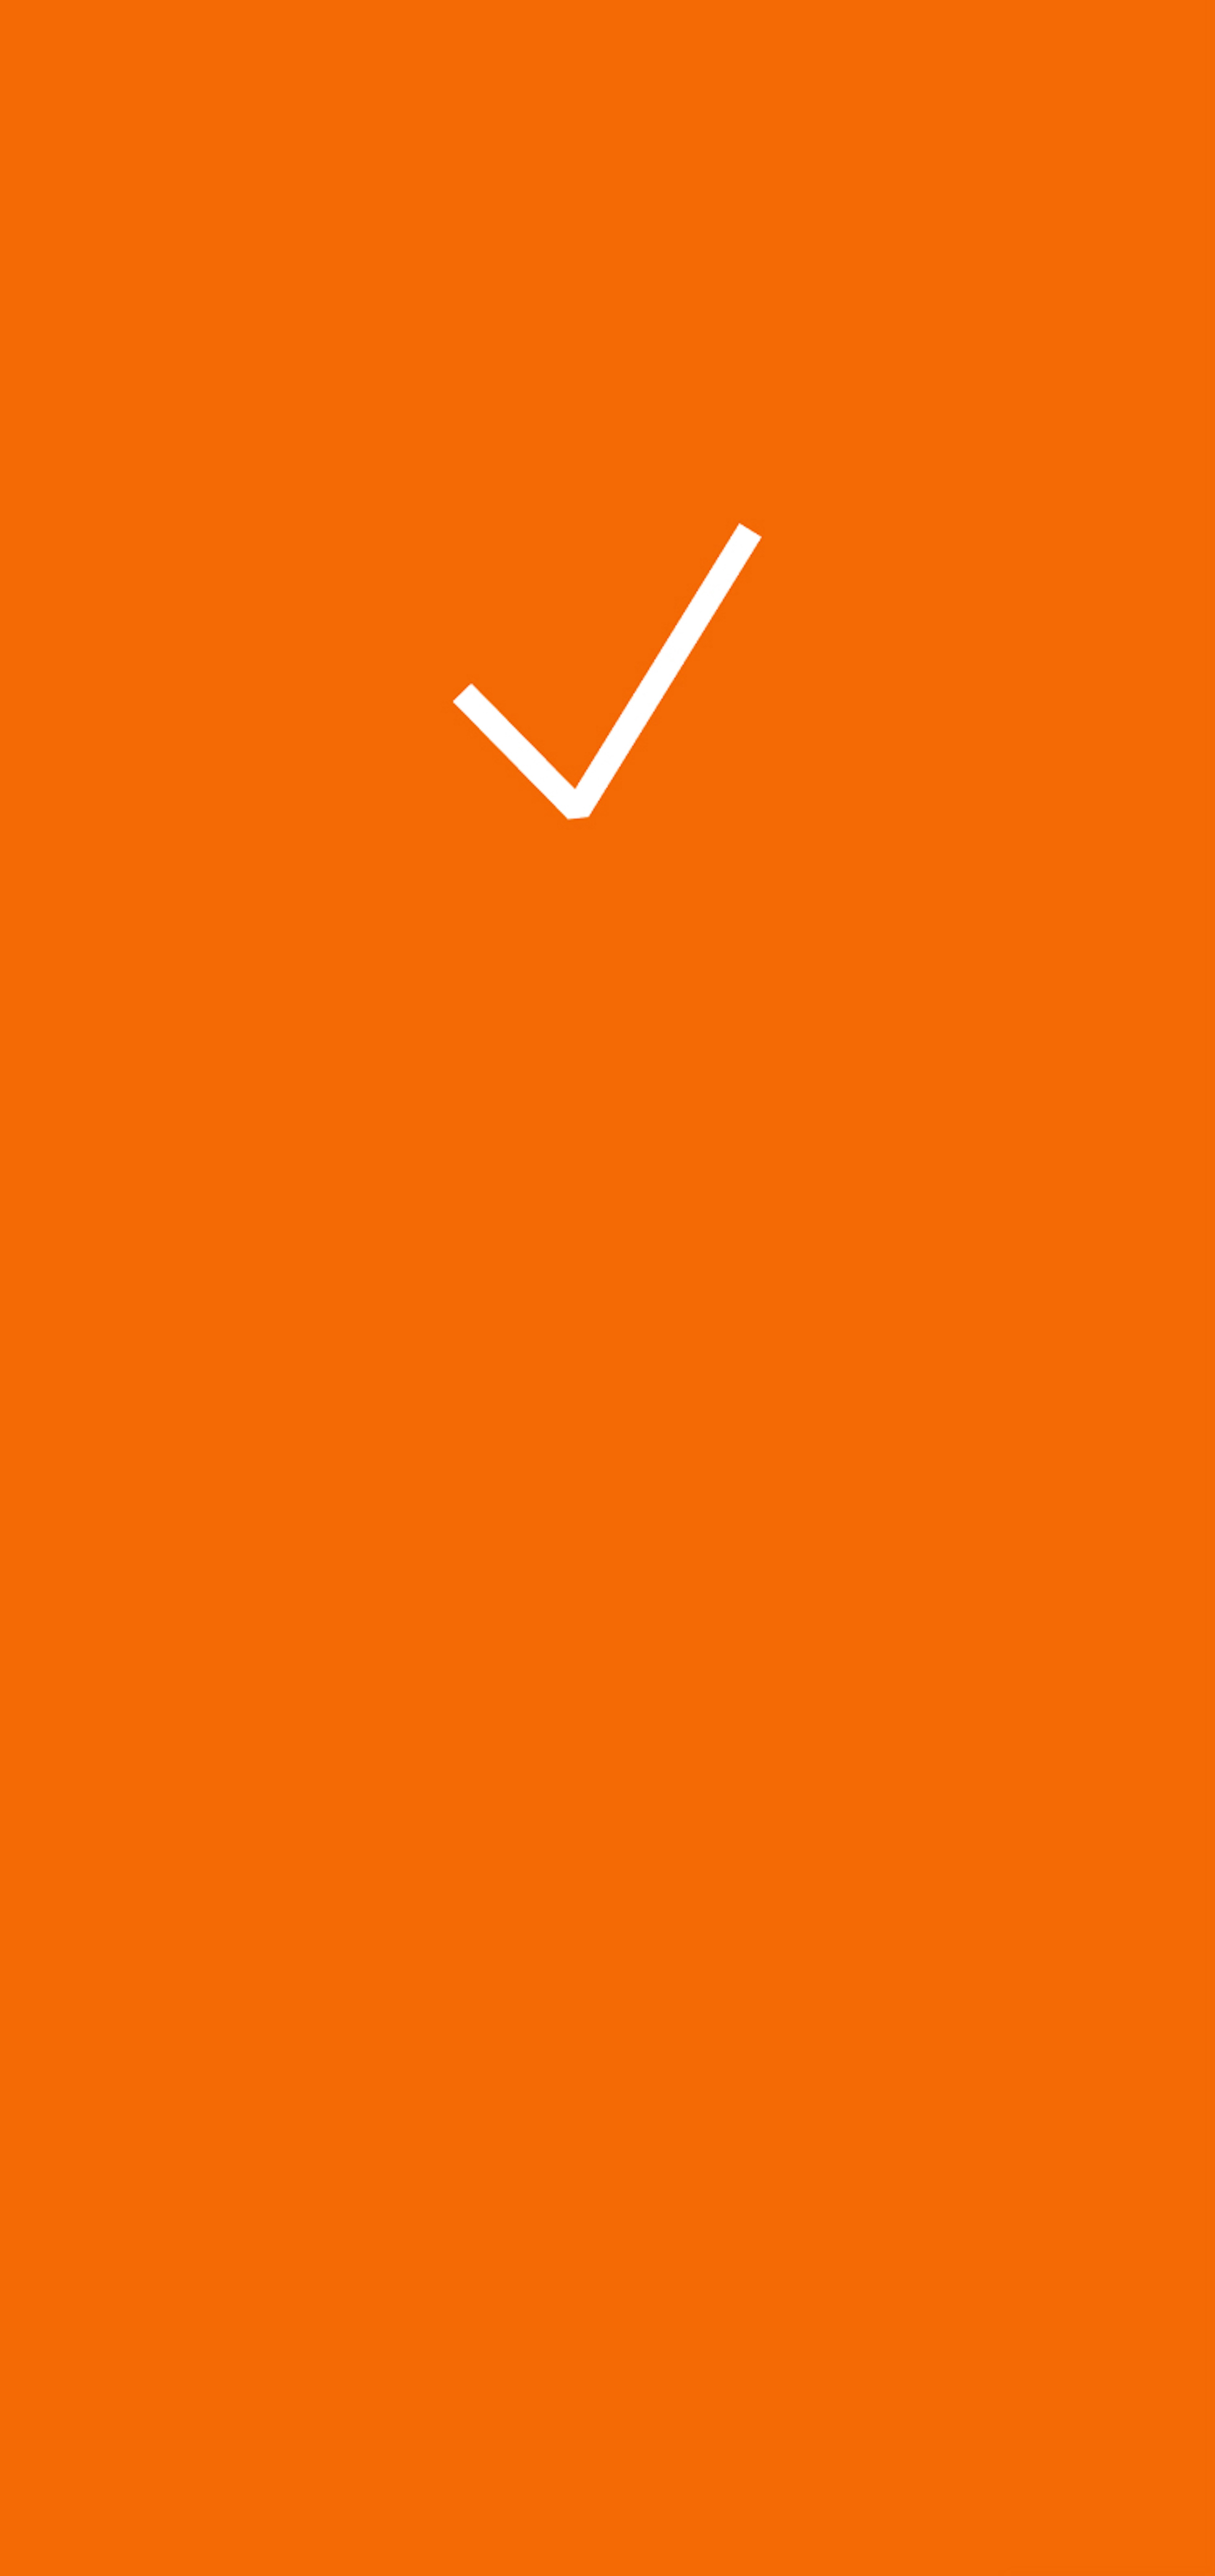 Weisser Hacken mit orangen Hintergrund 